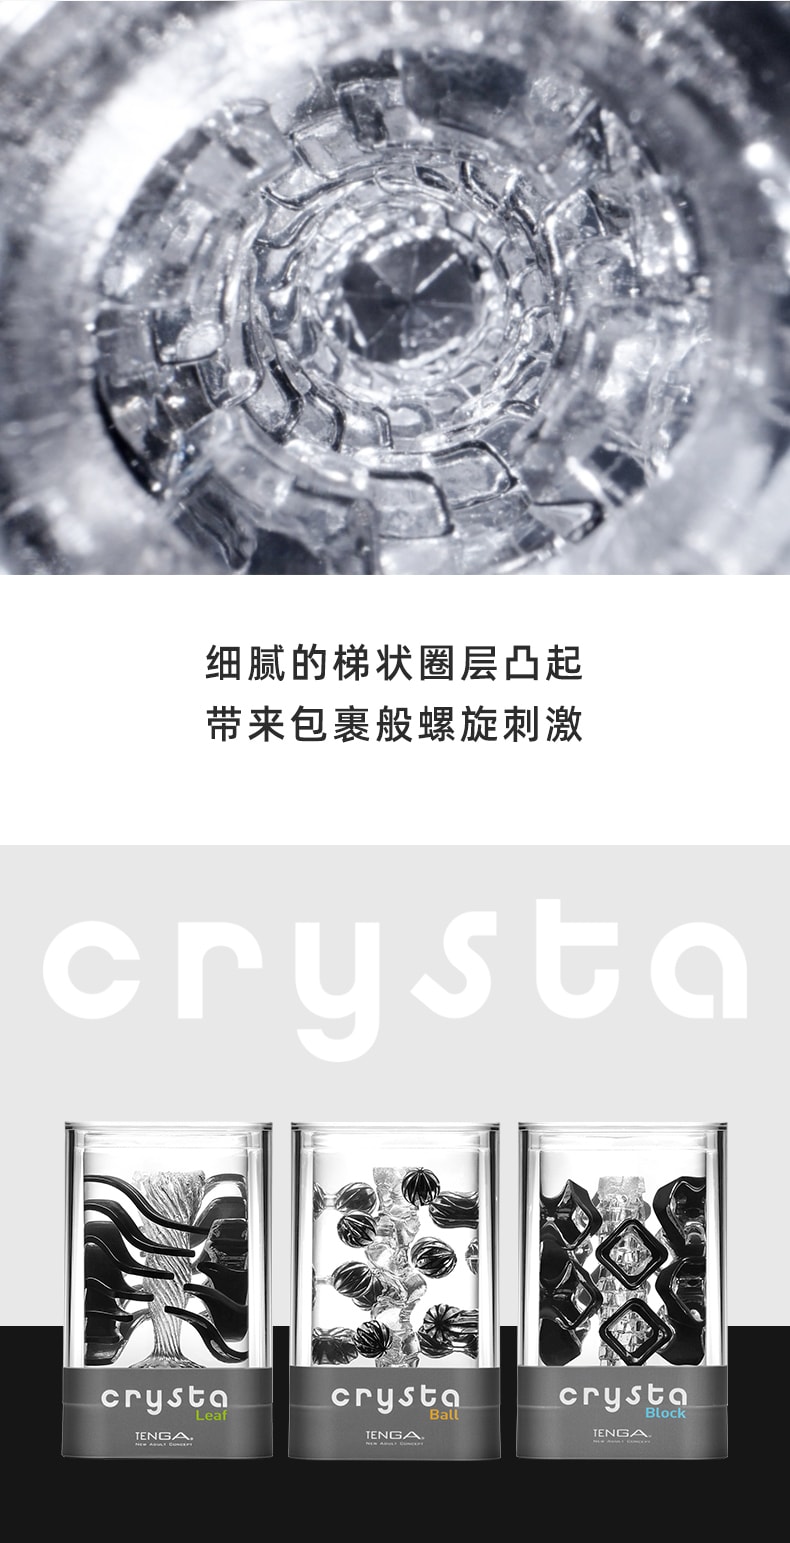 日本 TENGA 进口飞机杯新品CRYSTA内雕颗粒 #球